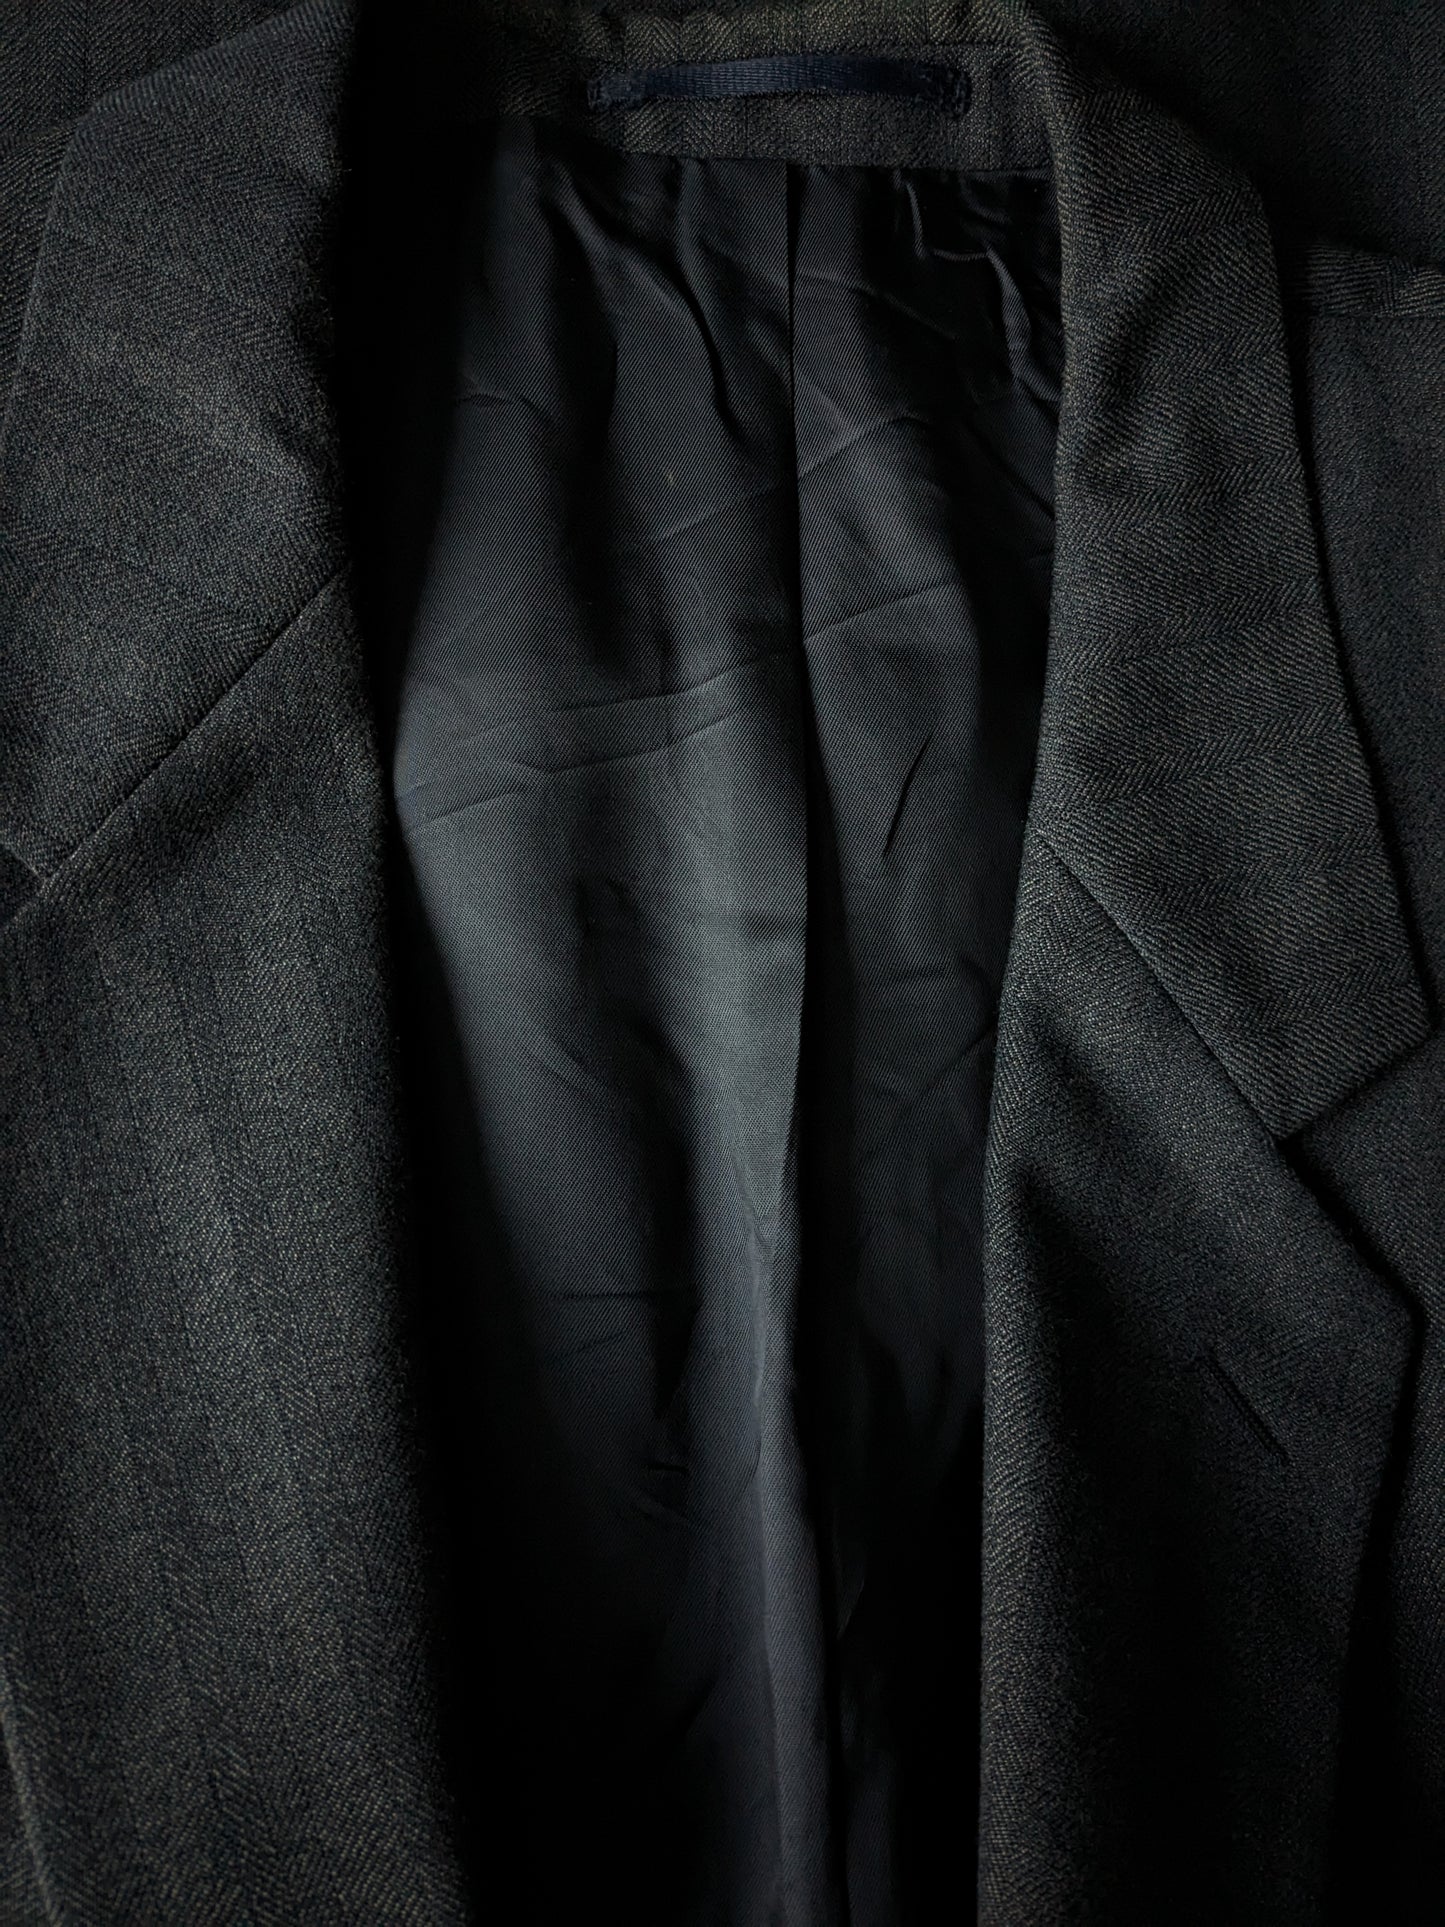 Veste en laine Varteks. Motif à chevrons noir gris. Taille 56 / XL. 45% de laine.